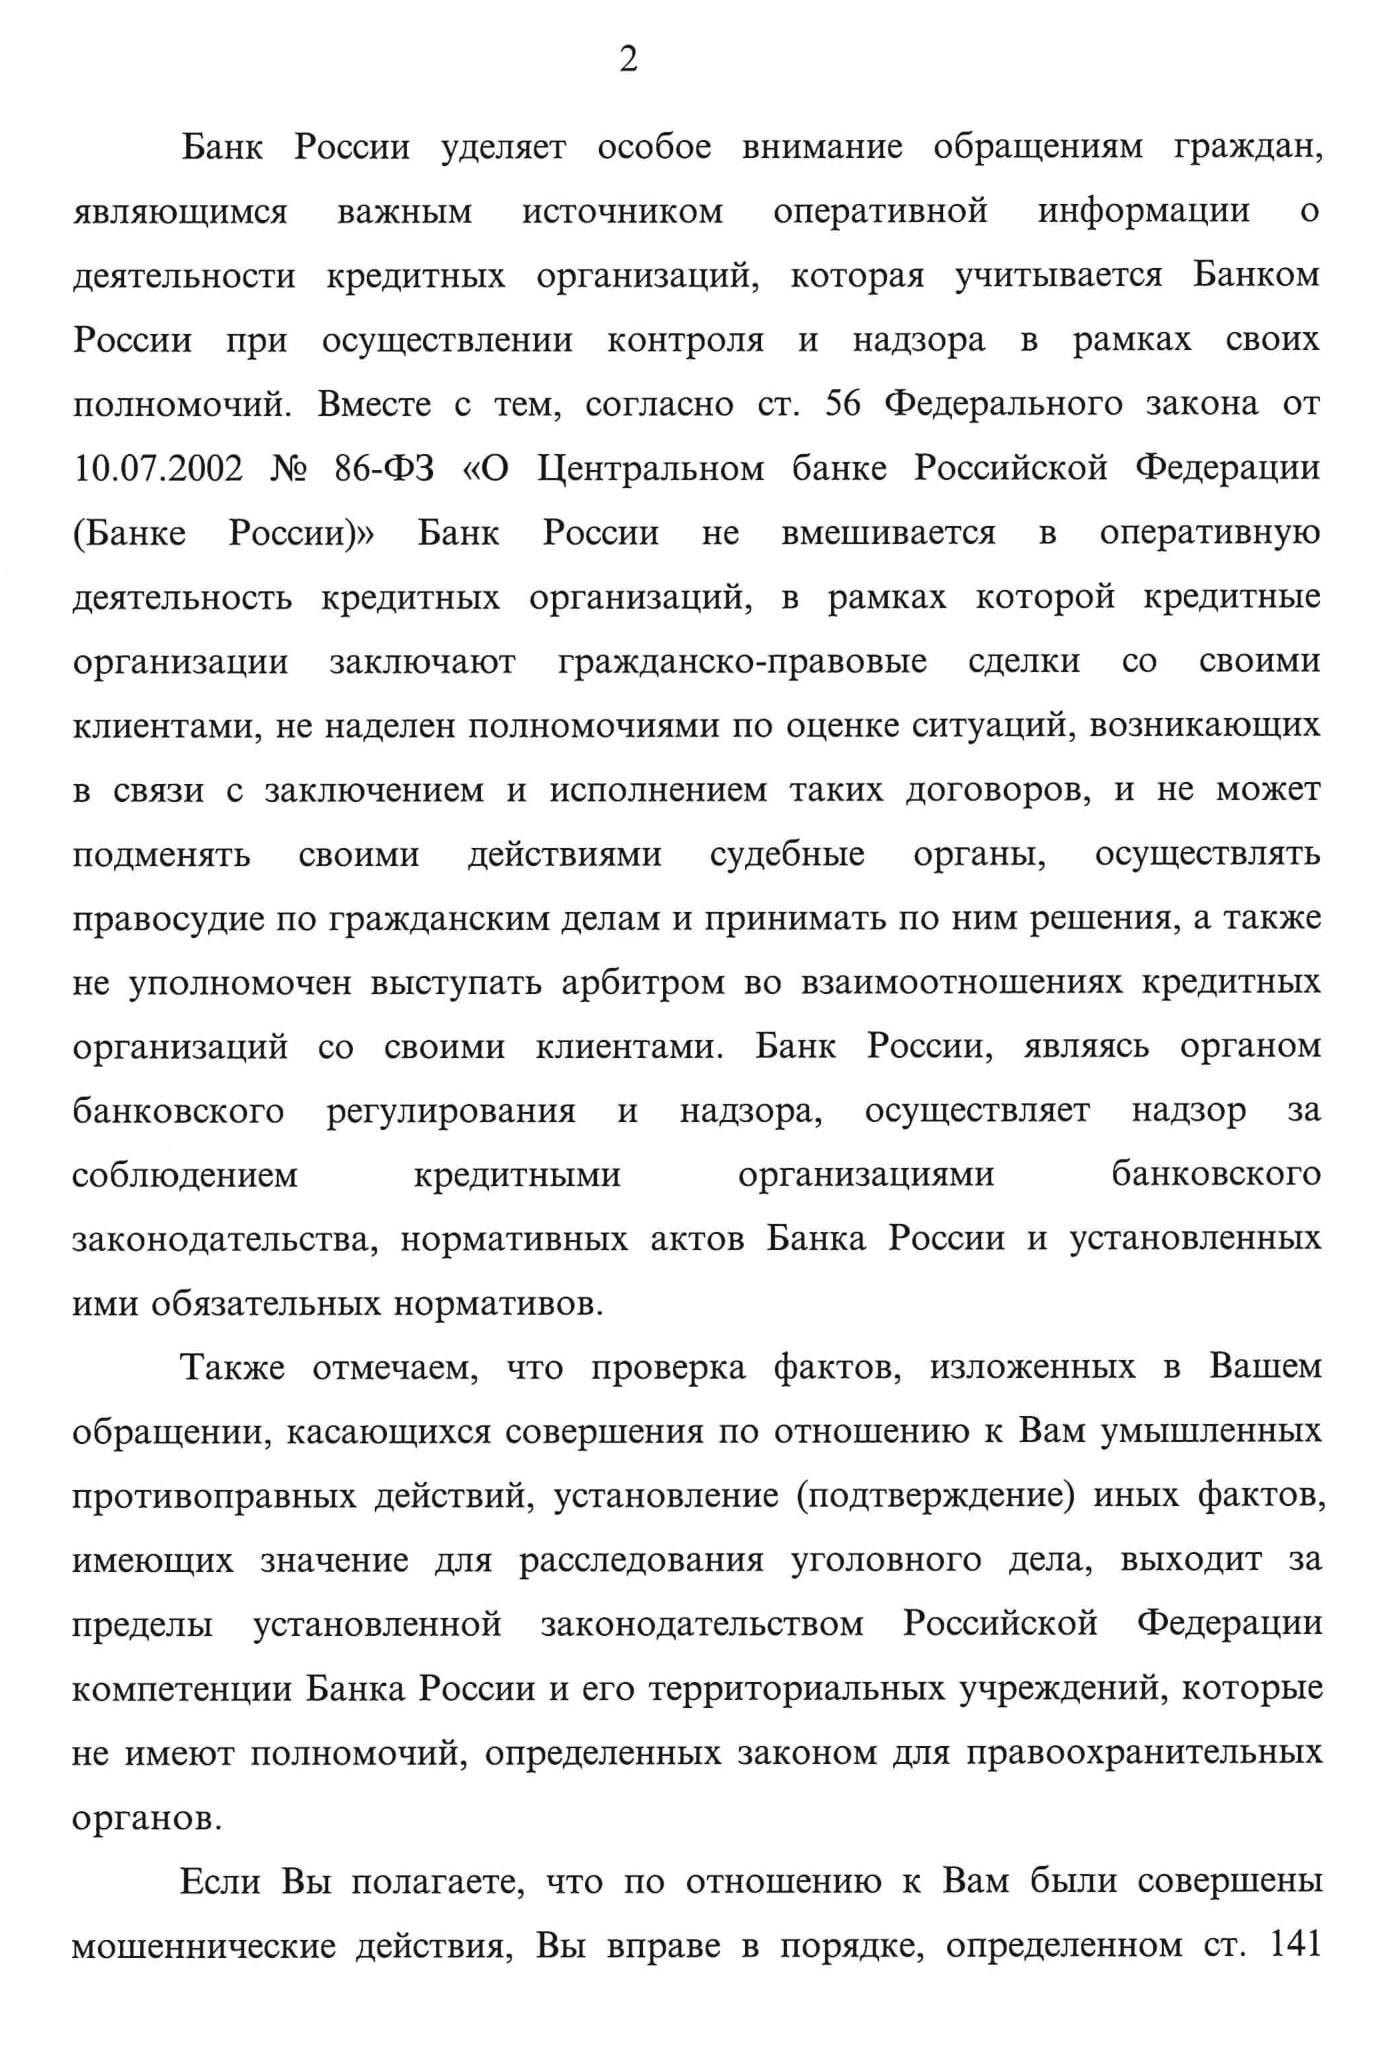 Ответ ЦБ: вмешиваться в деятельность банков Банк России по закону не может, советует обращаться в правоохранительные органы